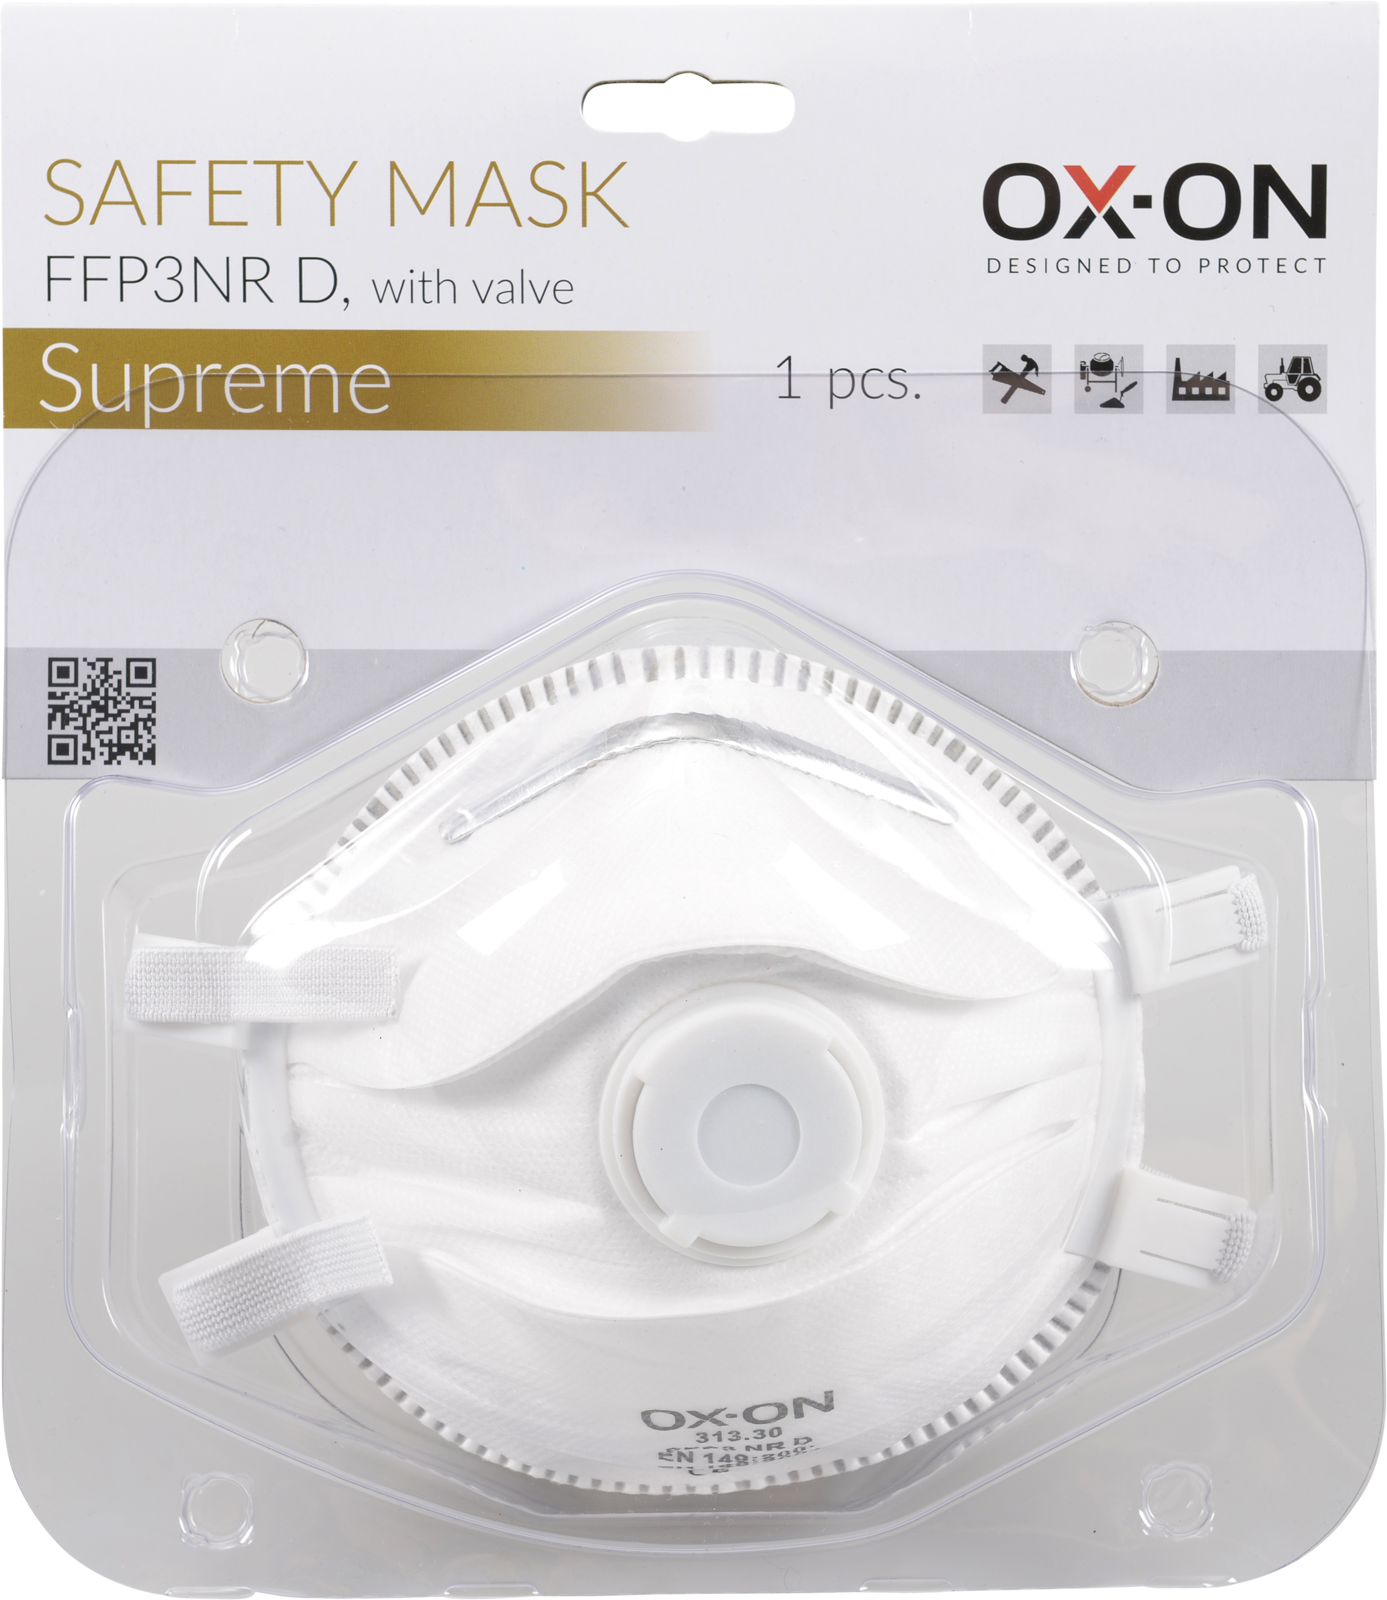 OX-ON Mask FFP3NR D w/Valve Supreme 313.31